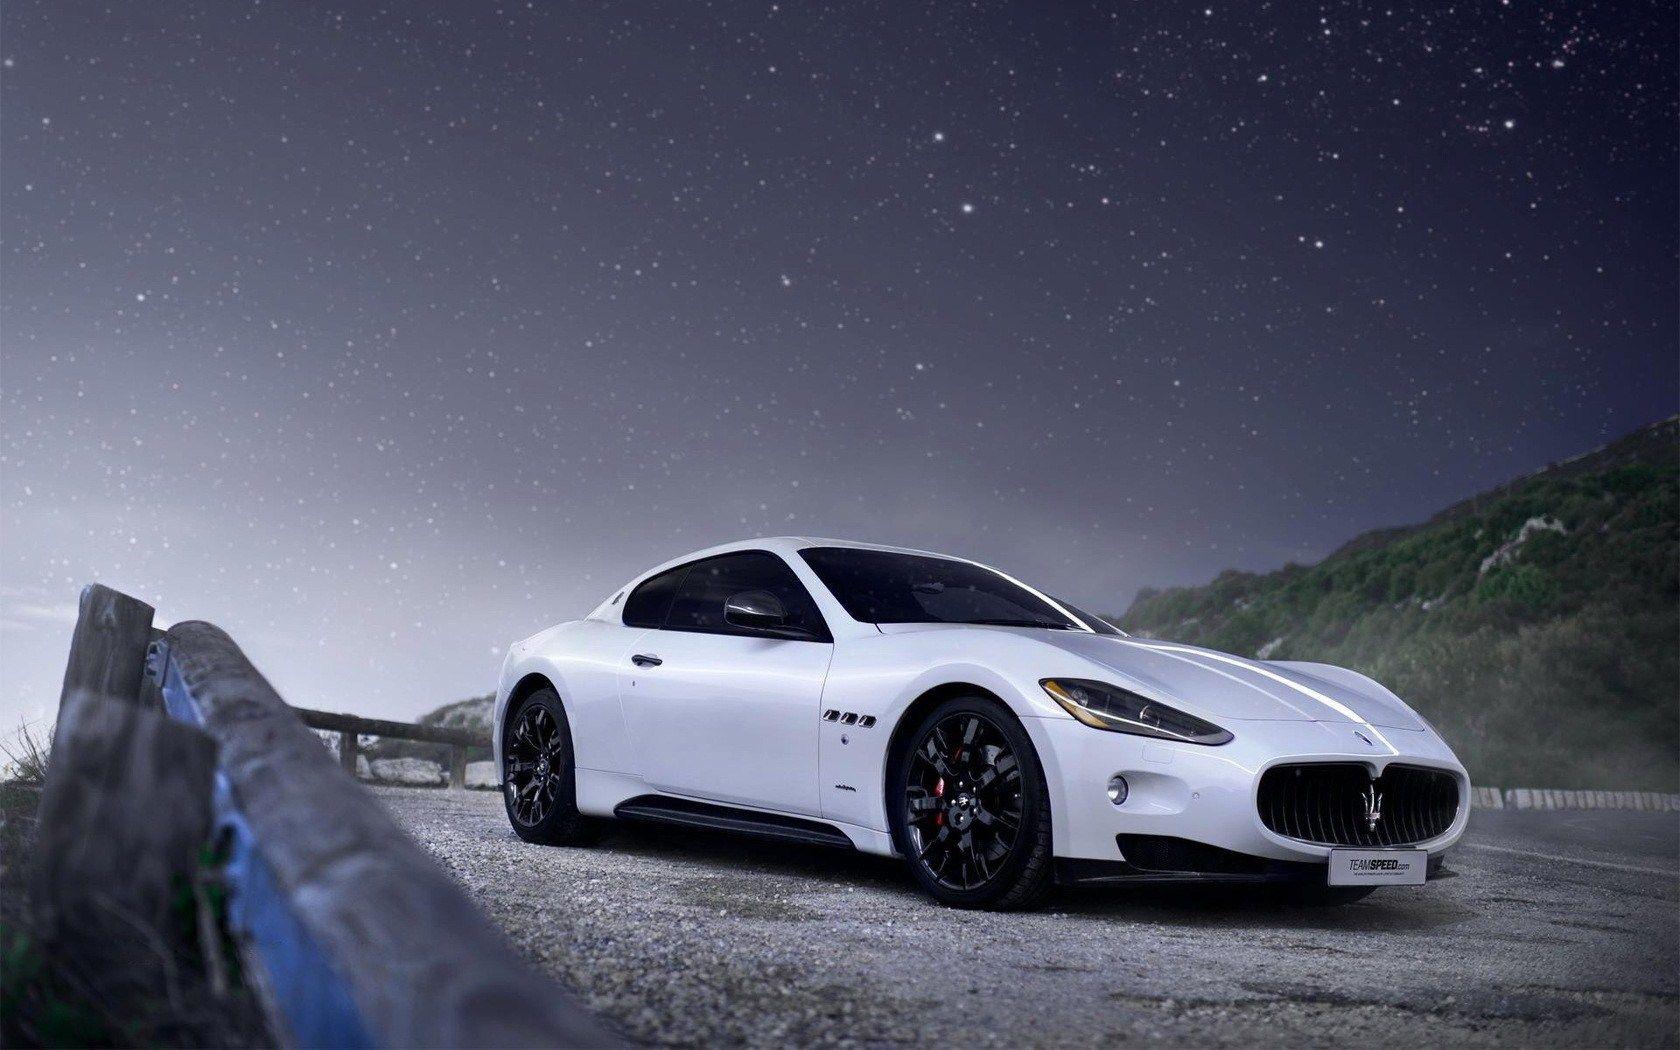 Download Wallpapers x Car Racing Maserati Full HD p